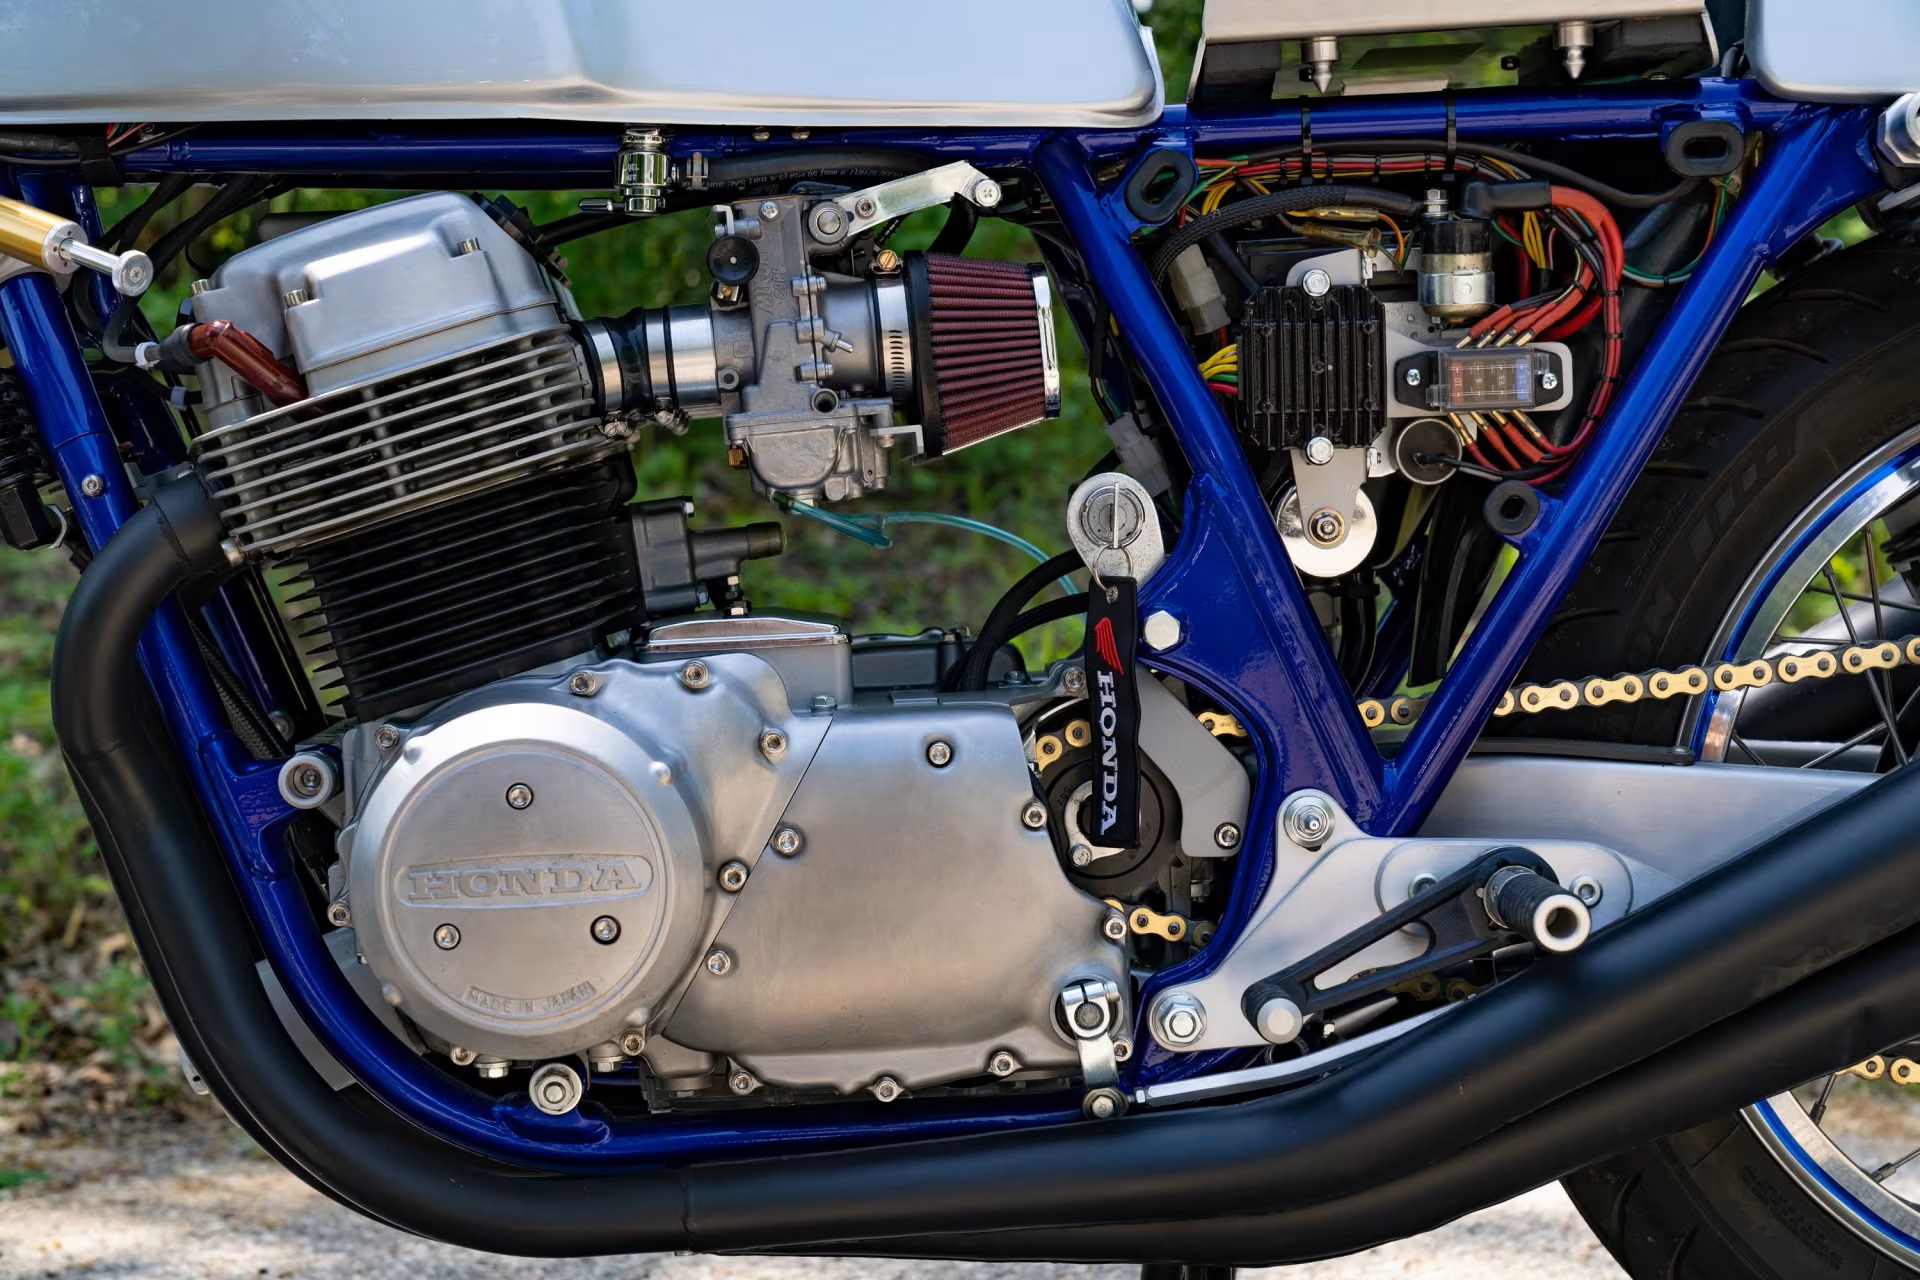 1972 Honda CB750 K2 Cafe Racer